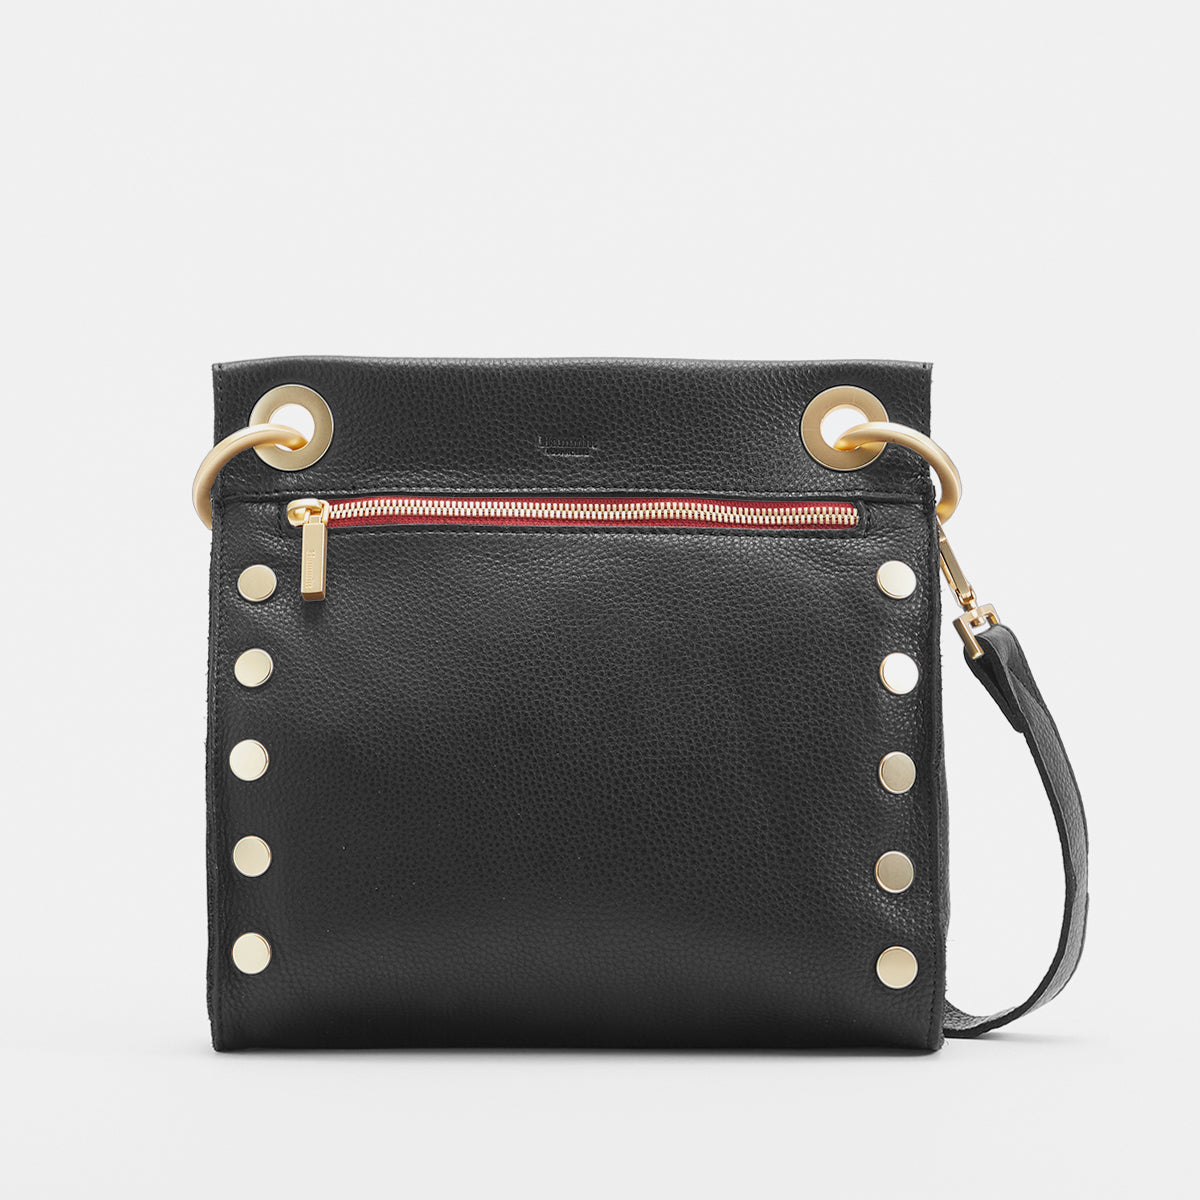 What color should i get? : r/handbags